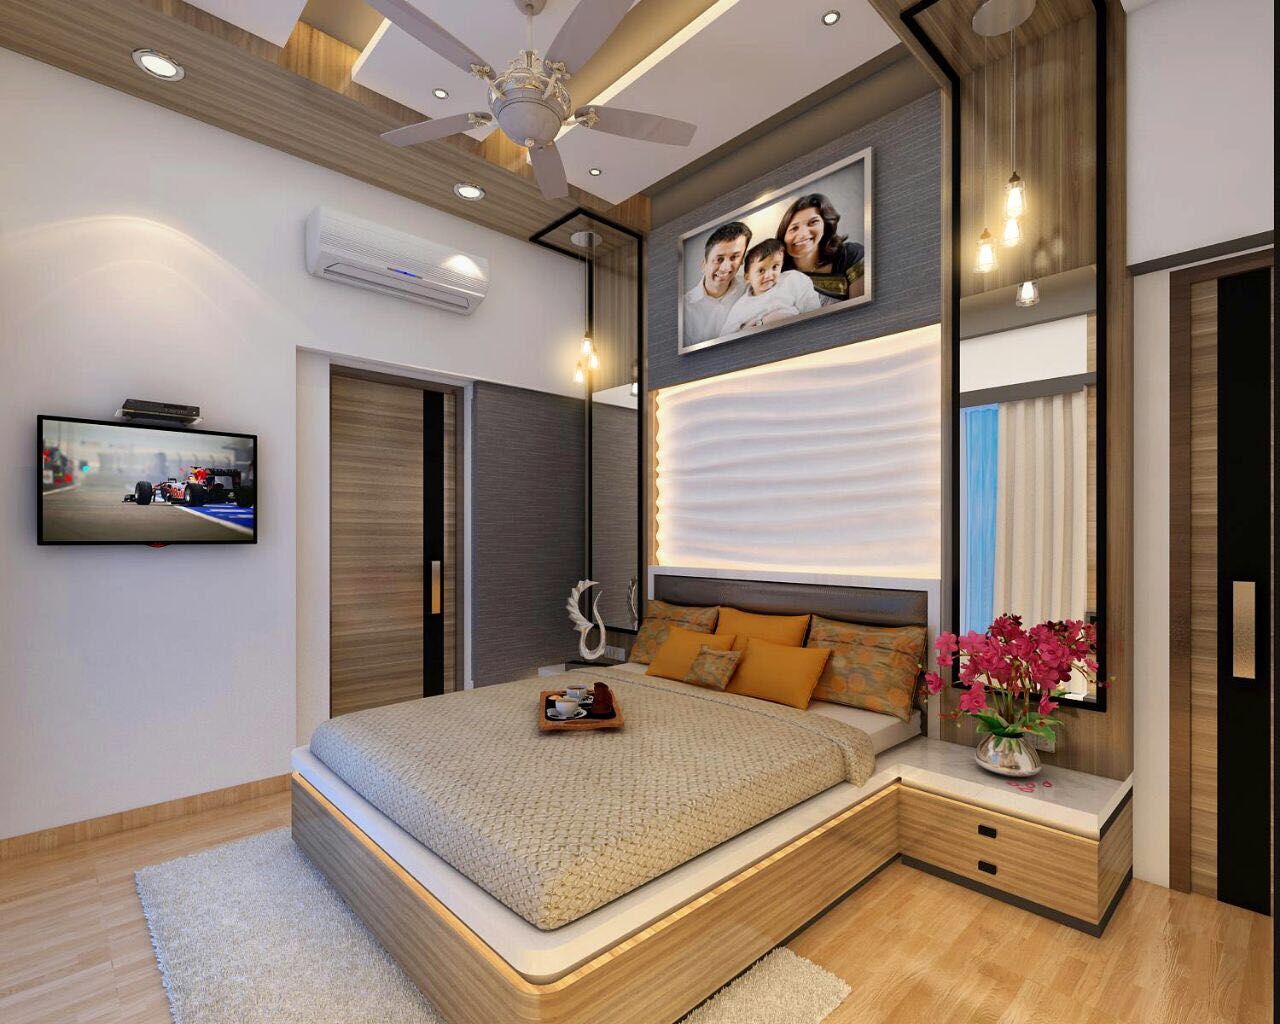 3BHK home design at Lodha in Thane, Mumbai , Square 4 Design & Build Square 4 Design & Build Kamar Tidur Modern